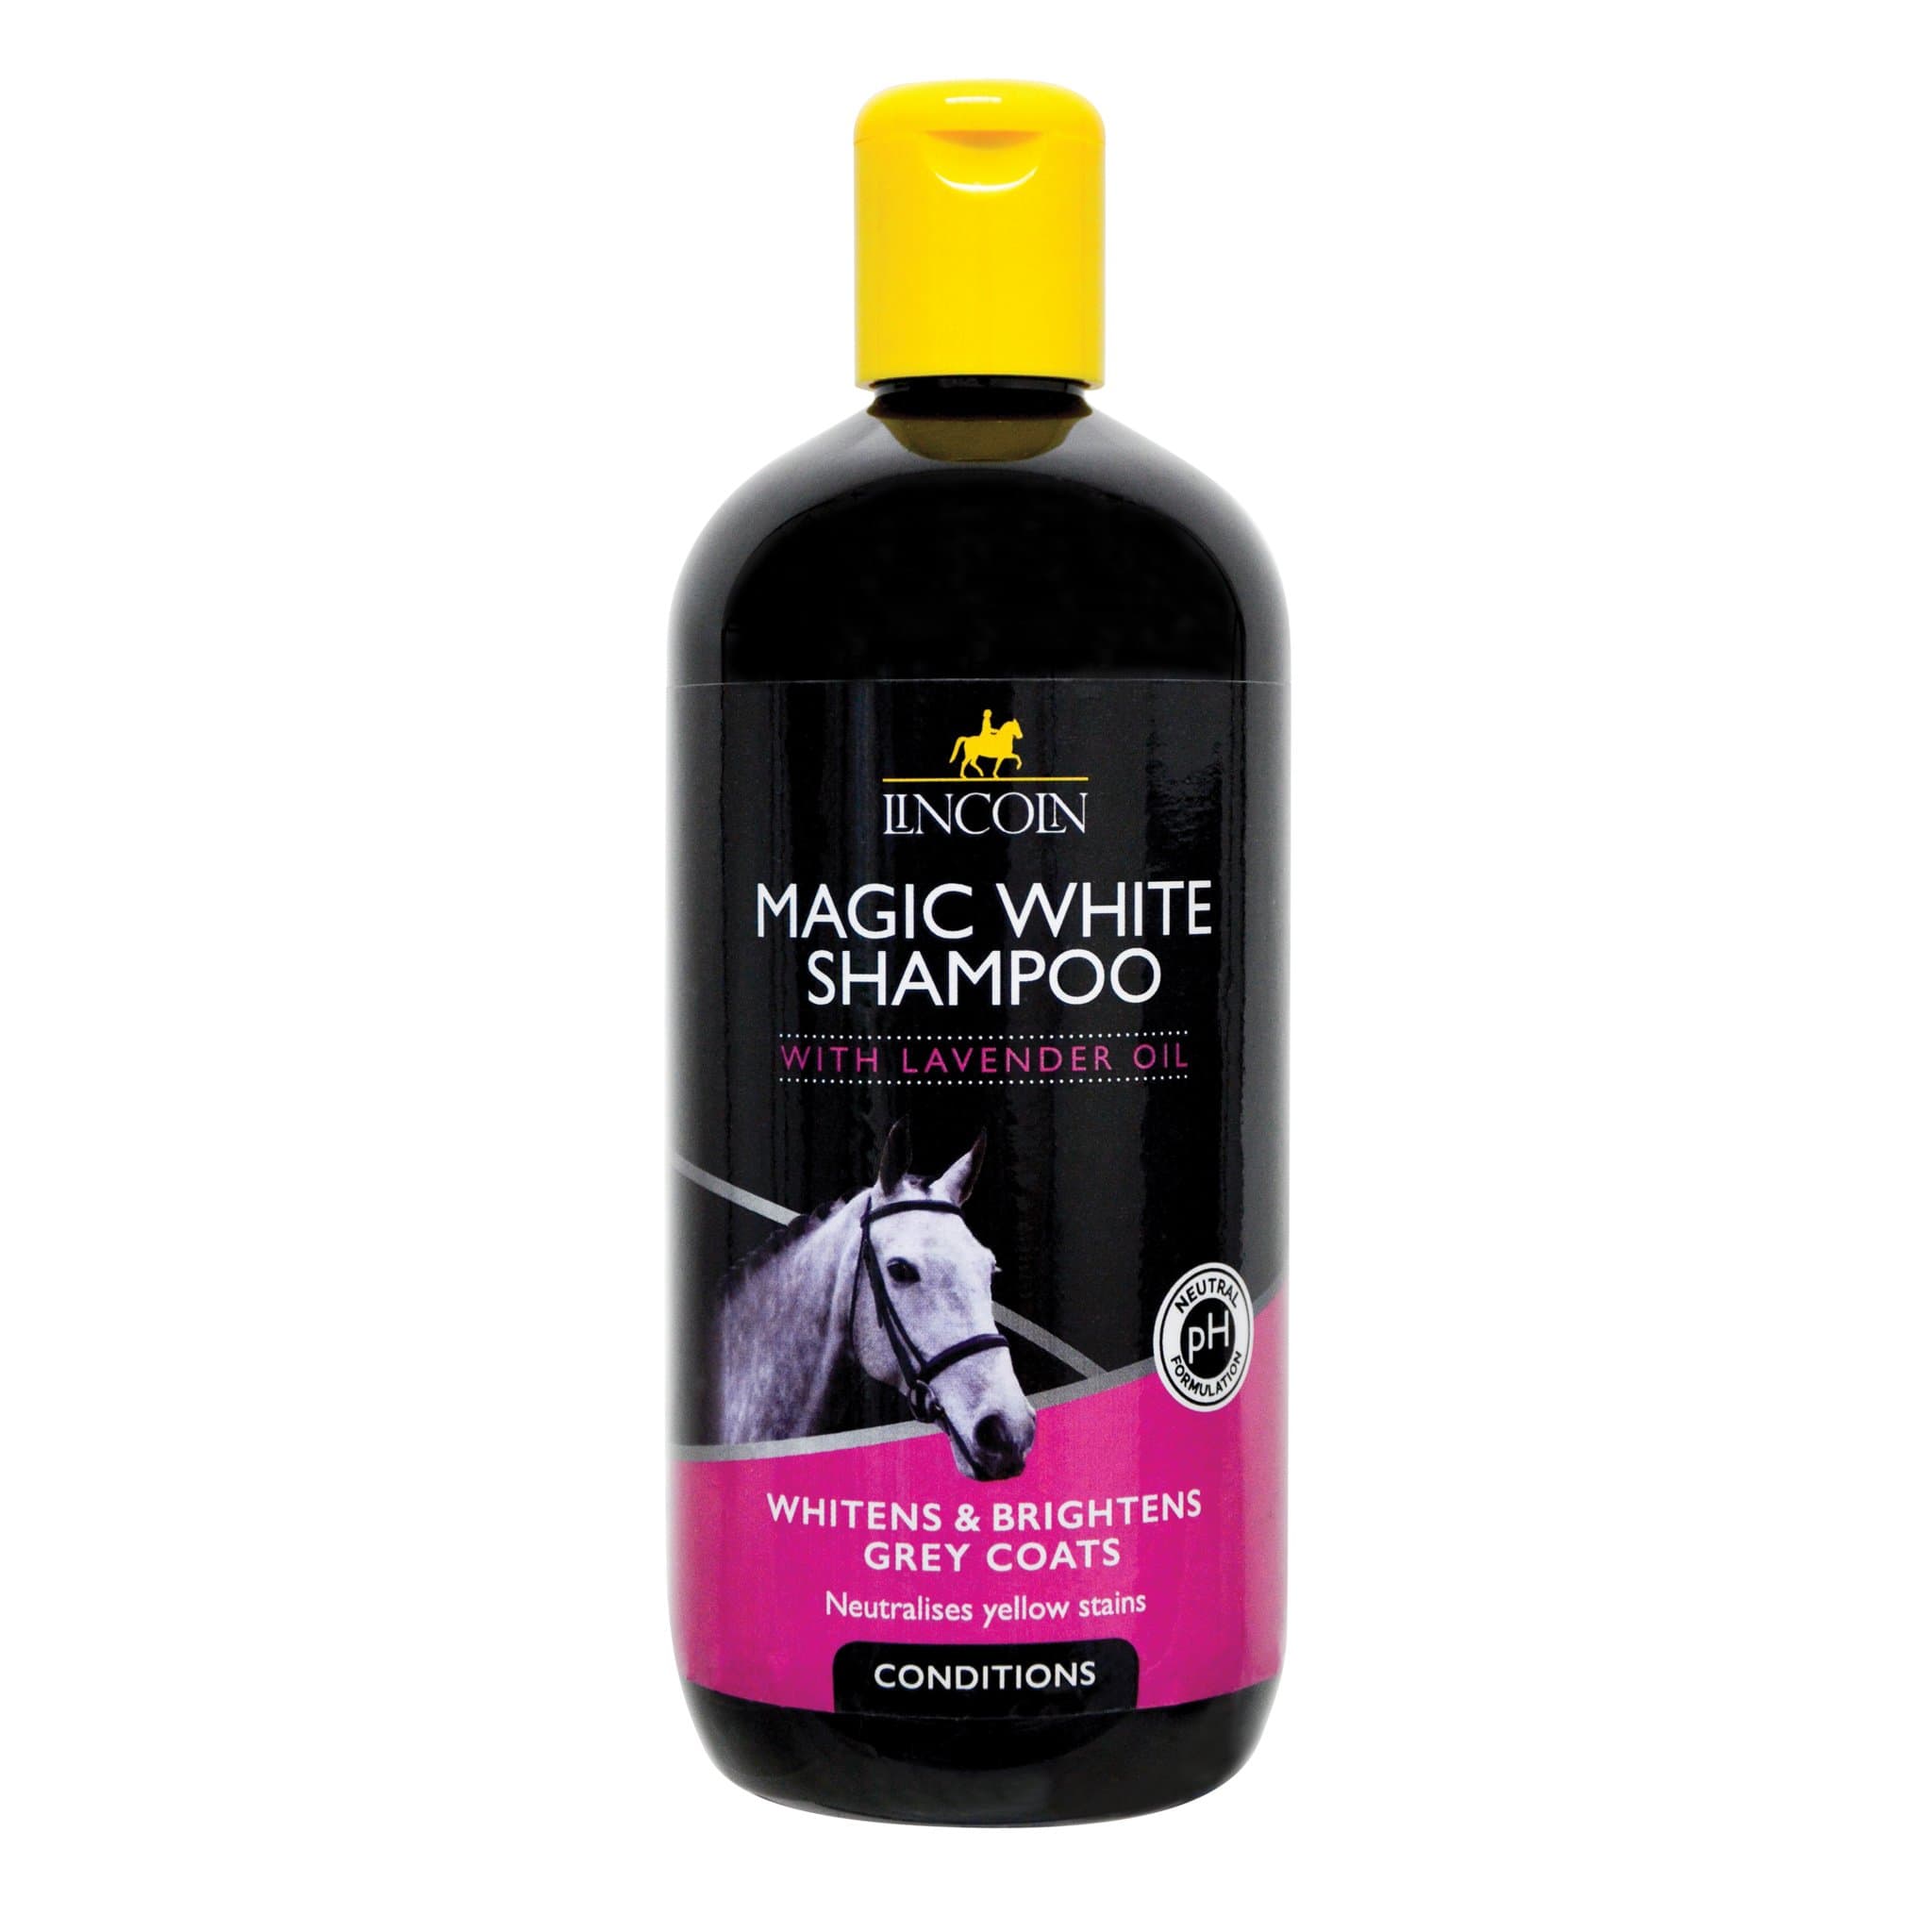 Lincoln Magic White Horse Shampoo 5679